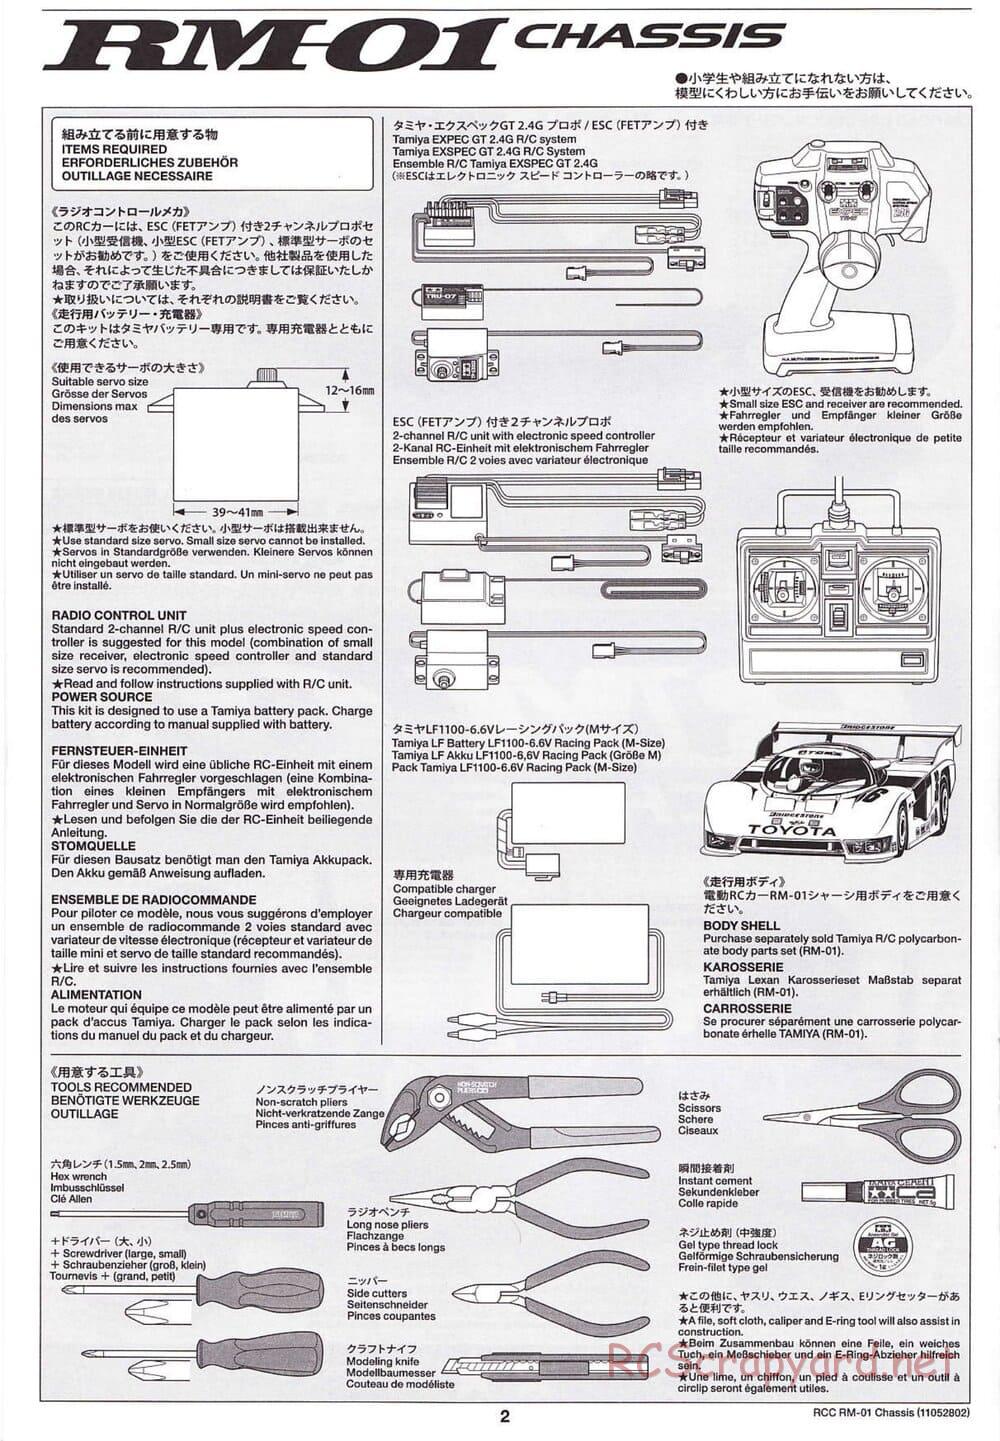 Tamiya - TA04-SS Chassis - Manual - Page 2